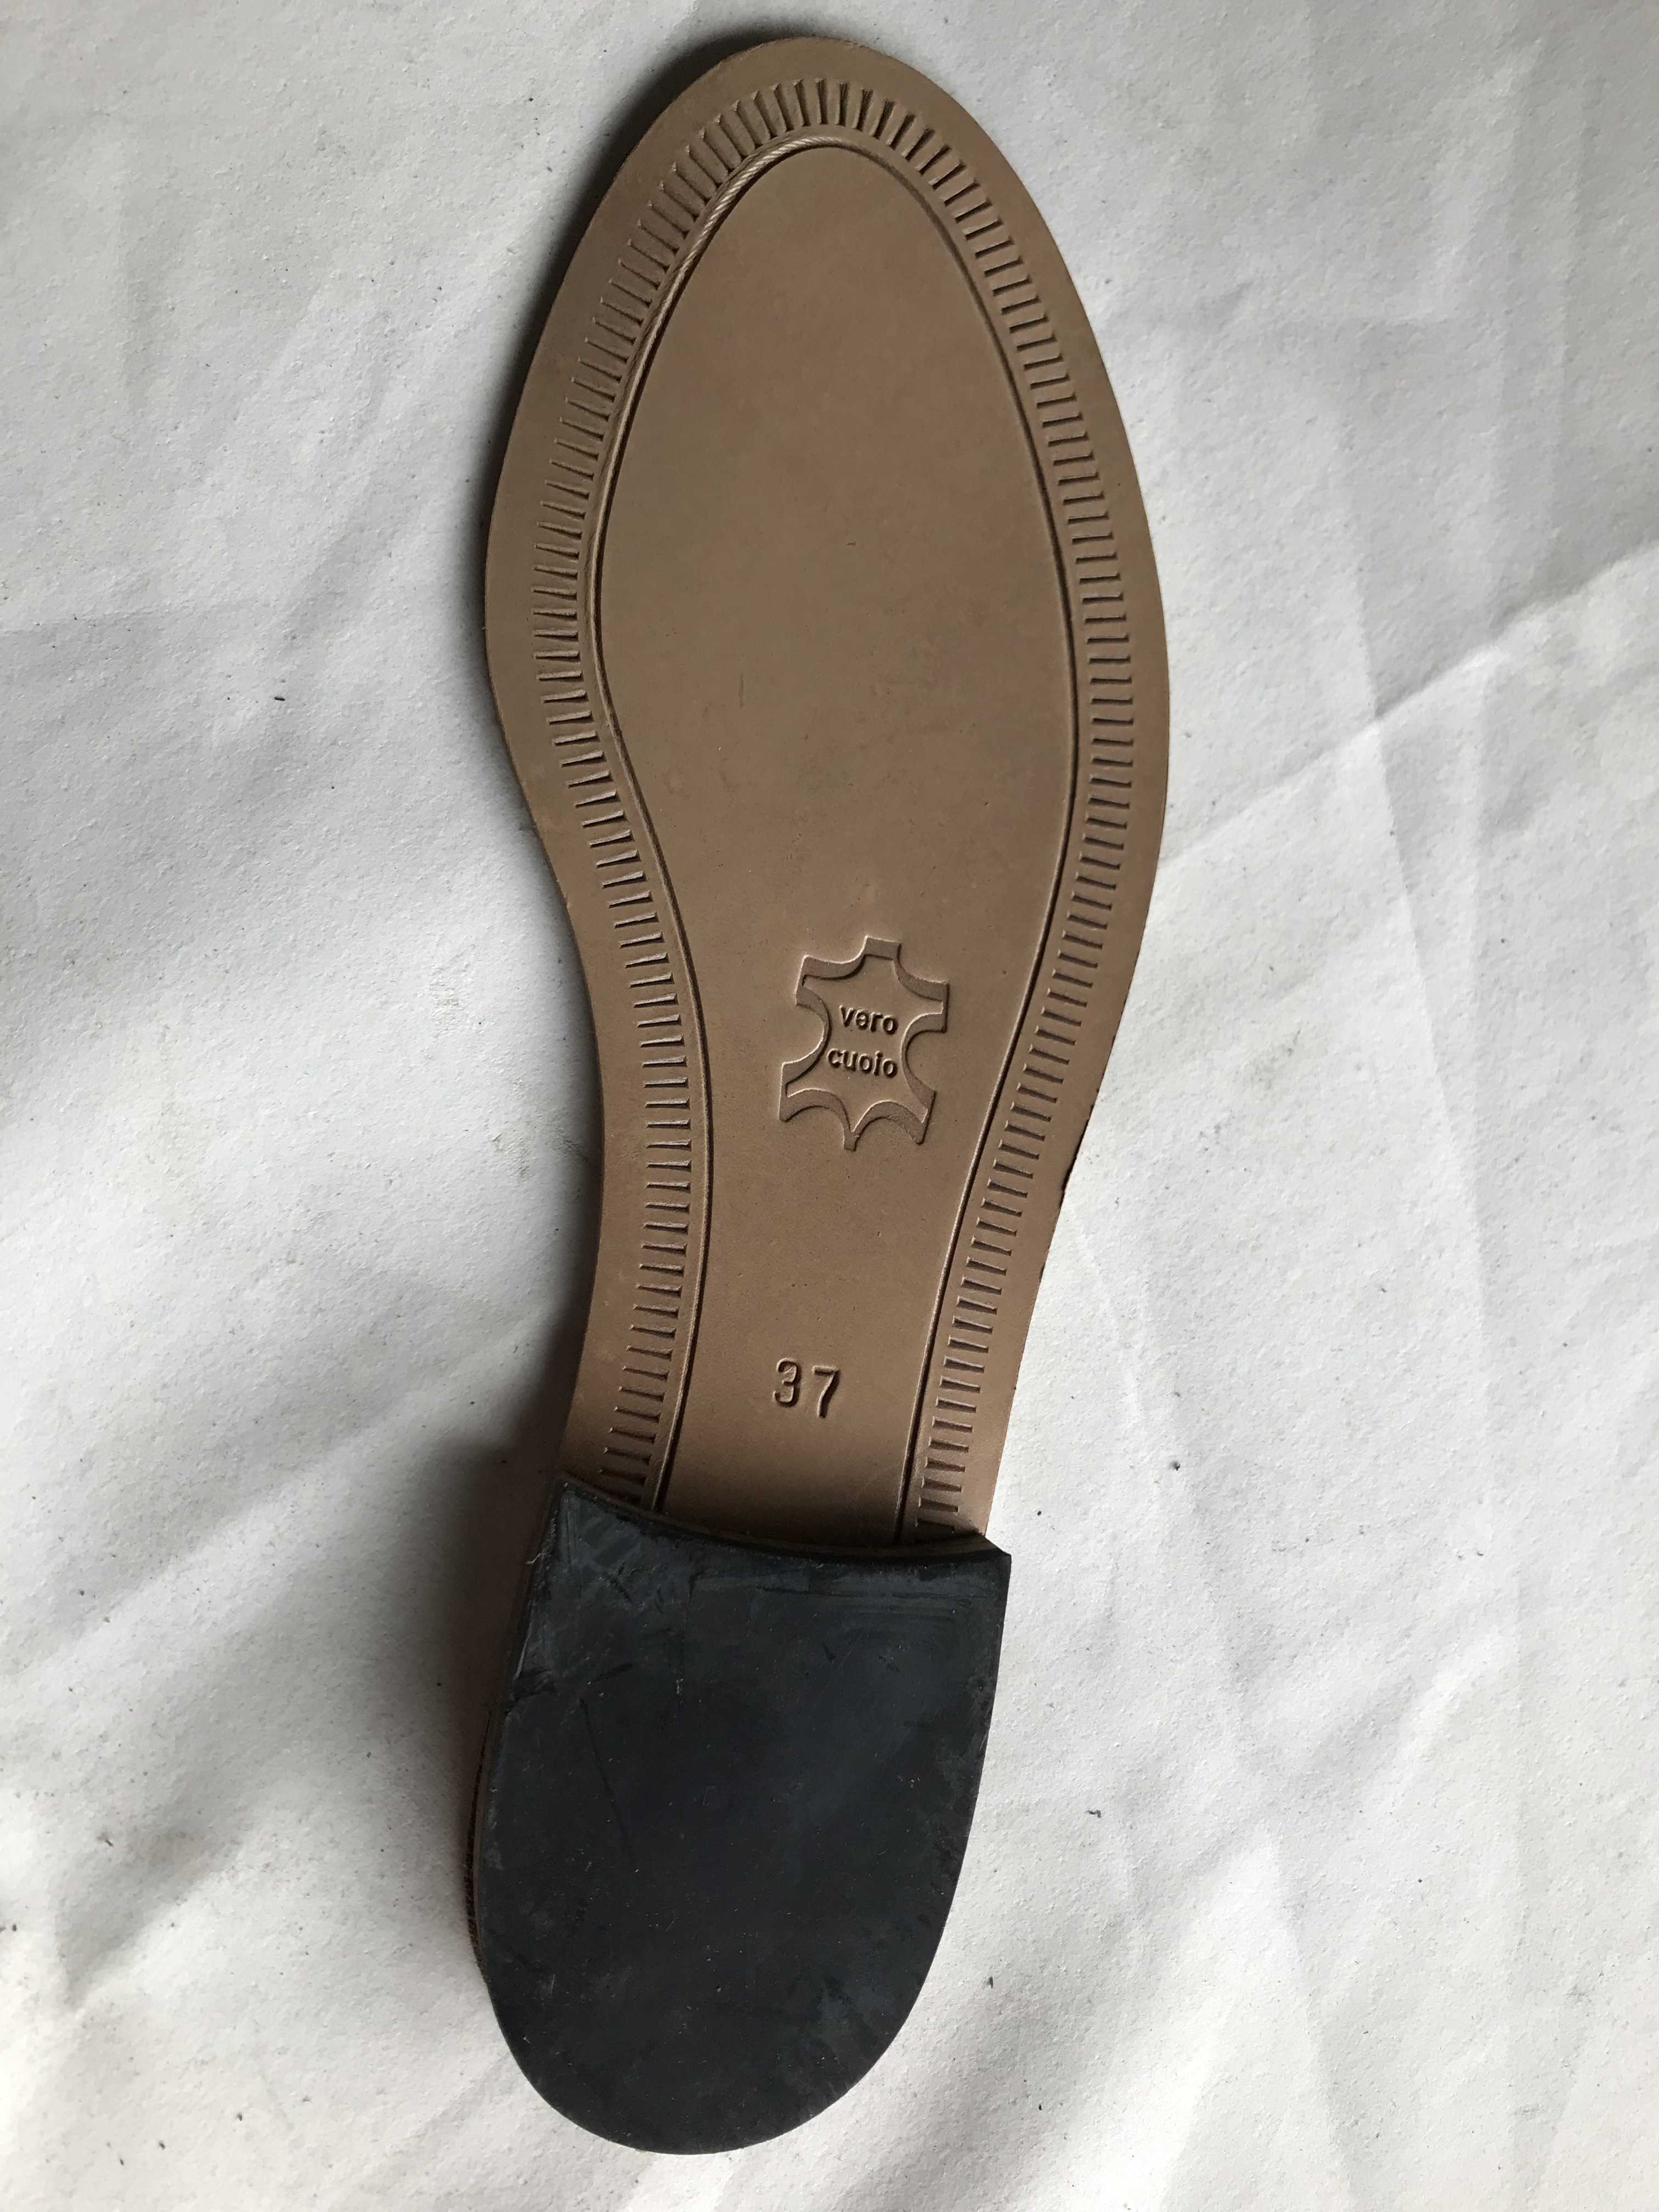 Suola in cuoio per sandali o infradito donna – IF5 in vendita - foto 6